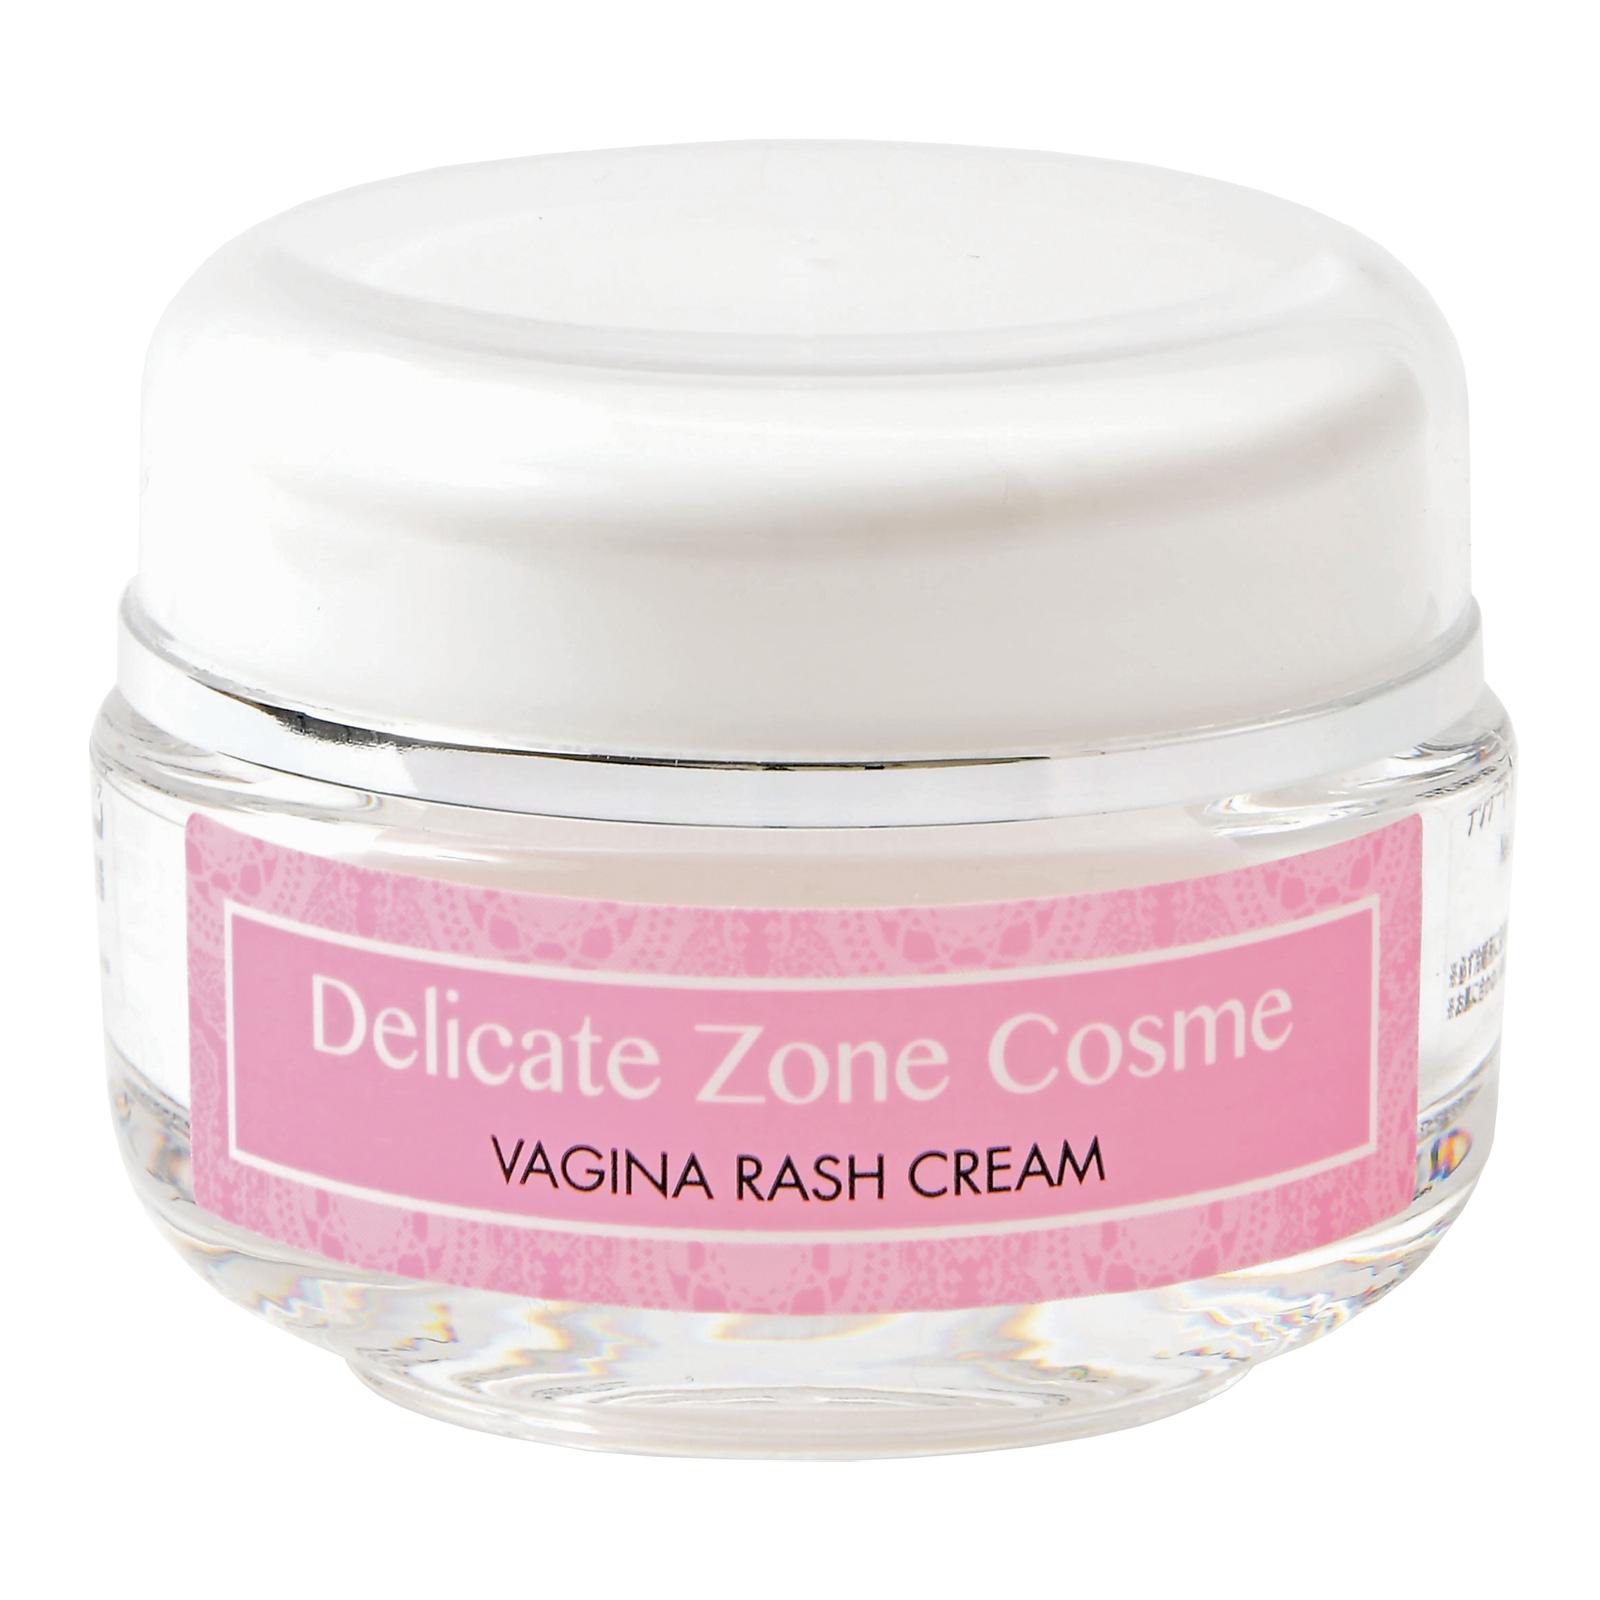 Delicate Zone Cosme Vagina Rash Cream